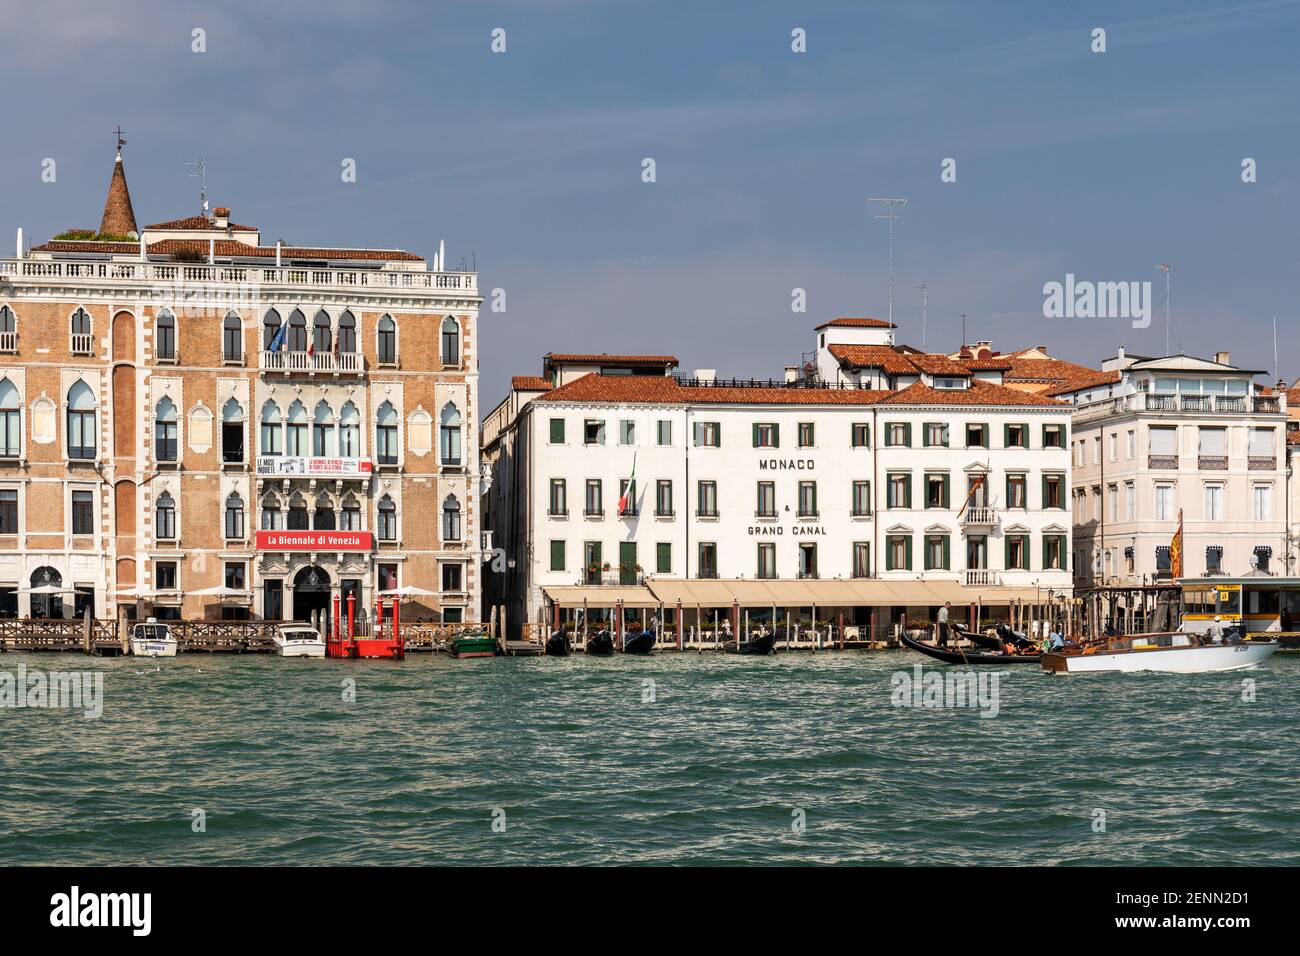 Vue sur le Grand Canal à Venise de l'Hôtel Monaco et la Biennale di Venezia, San Marco, Venise, Italie Banque D'Images